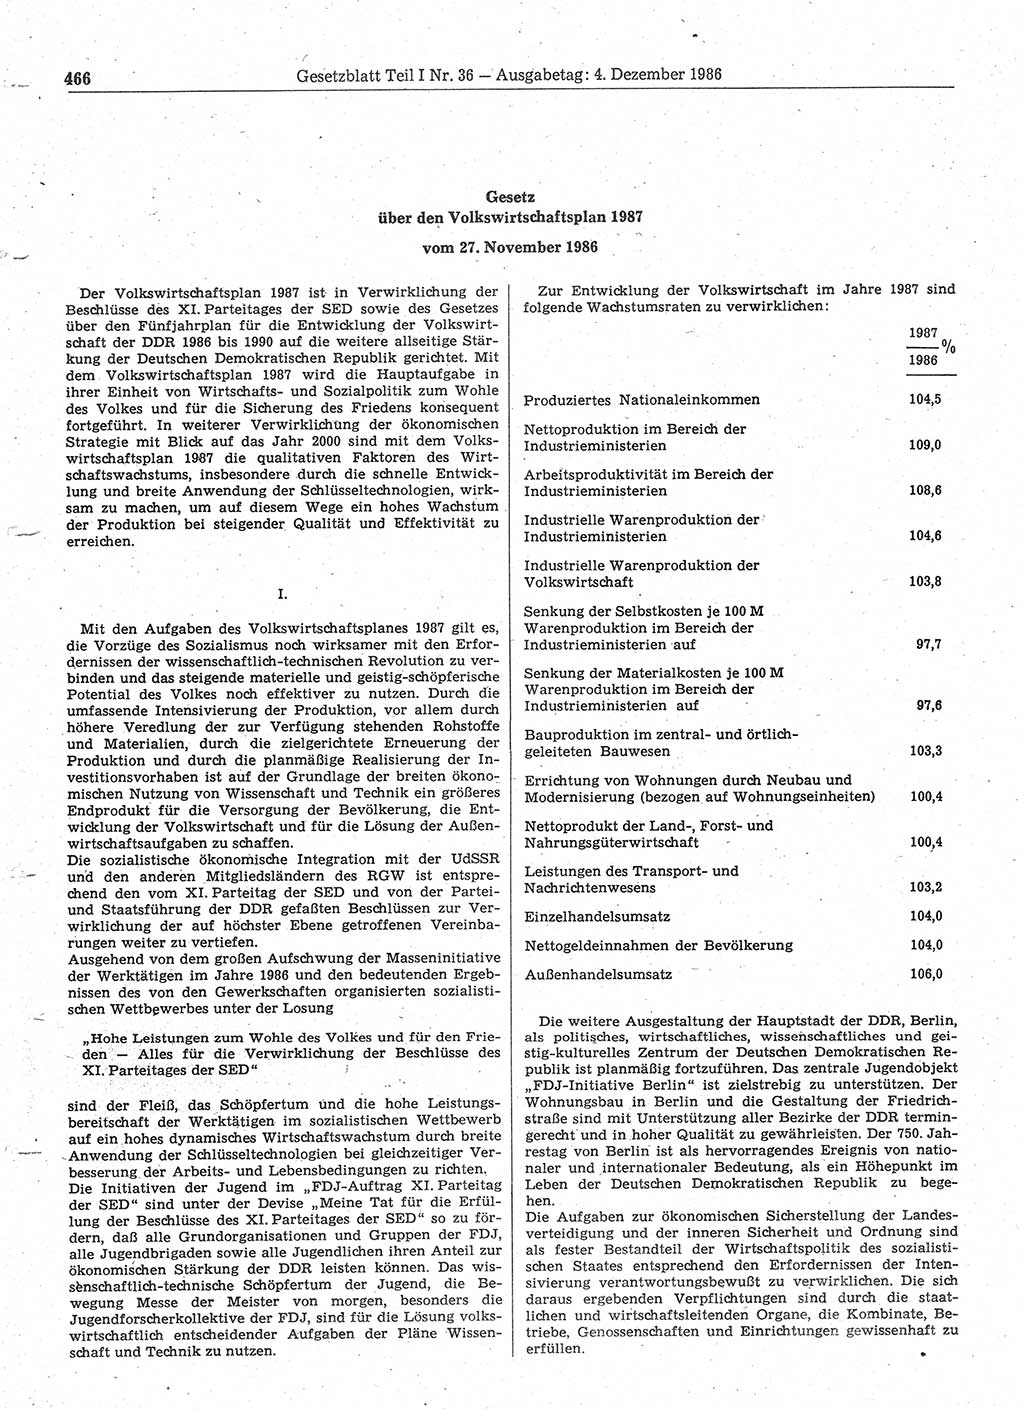 Gesetzblatt (GBl.) der Deutschen Demokratischen Republik (DDR) Teil Ⅰ 1986, Seite 466 (GBl. DDR Ⅰ 1986, S. 466)